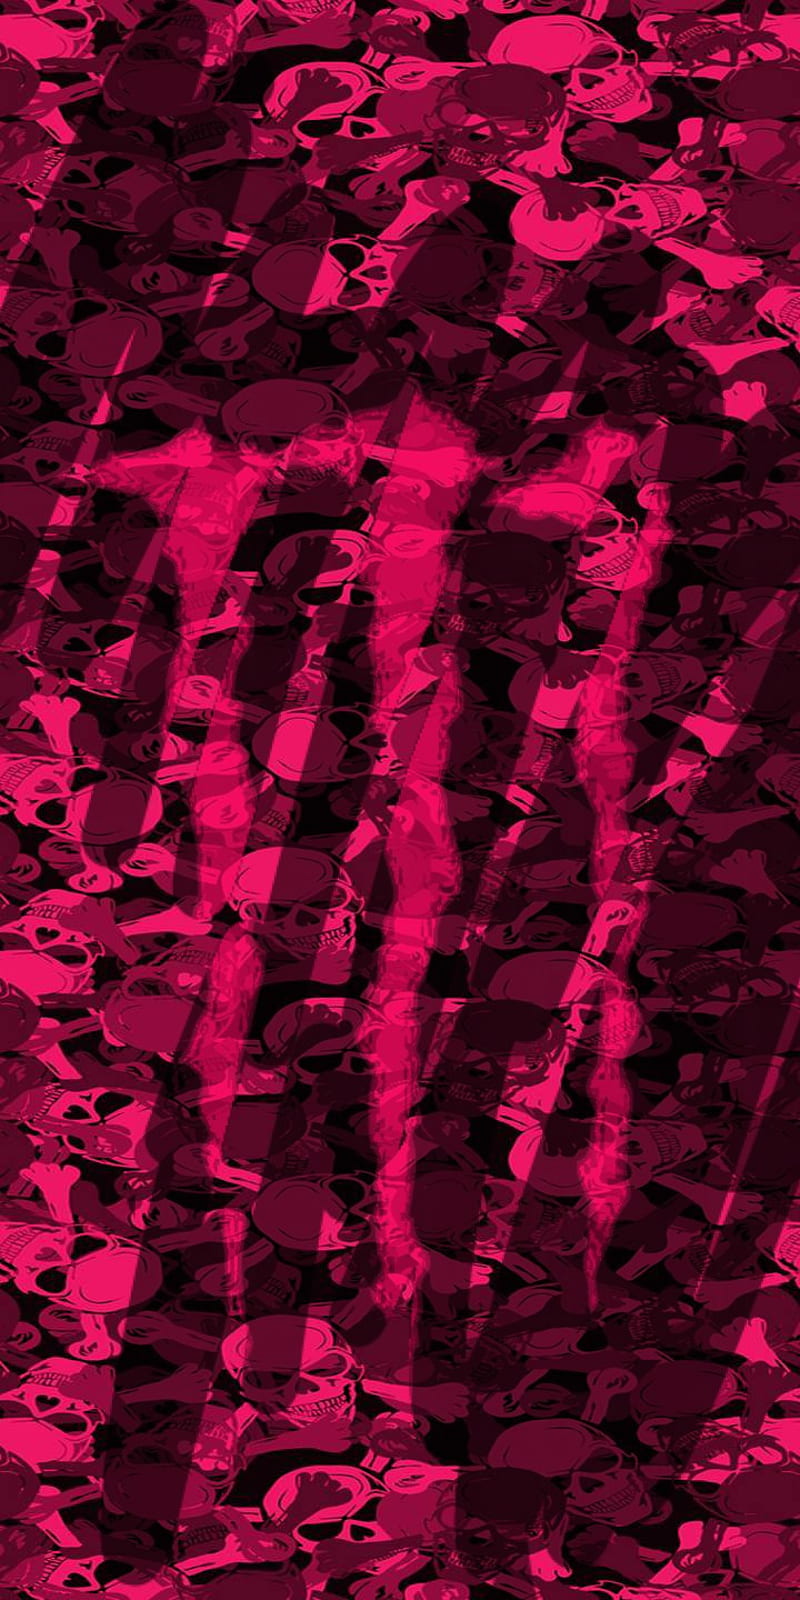 Pink Camo Monster Logo: Một sự kết hợp tuyệt vời giữa sức mạnh và gợi cảm, đó là Pink Camo Monster Logo. Hãy để bản thân tràn đầy cảm hứng và sức mạnh khi nhìn thấy logo này. Hãy xem ảnh để khám phá những chi tiết tinh tế nhất của loại logo này.